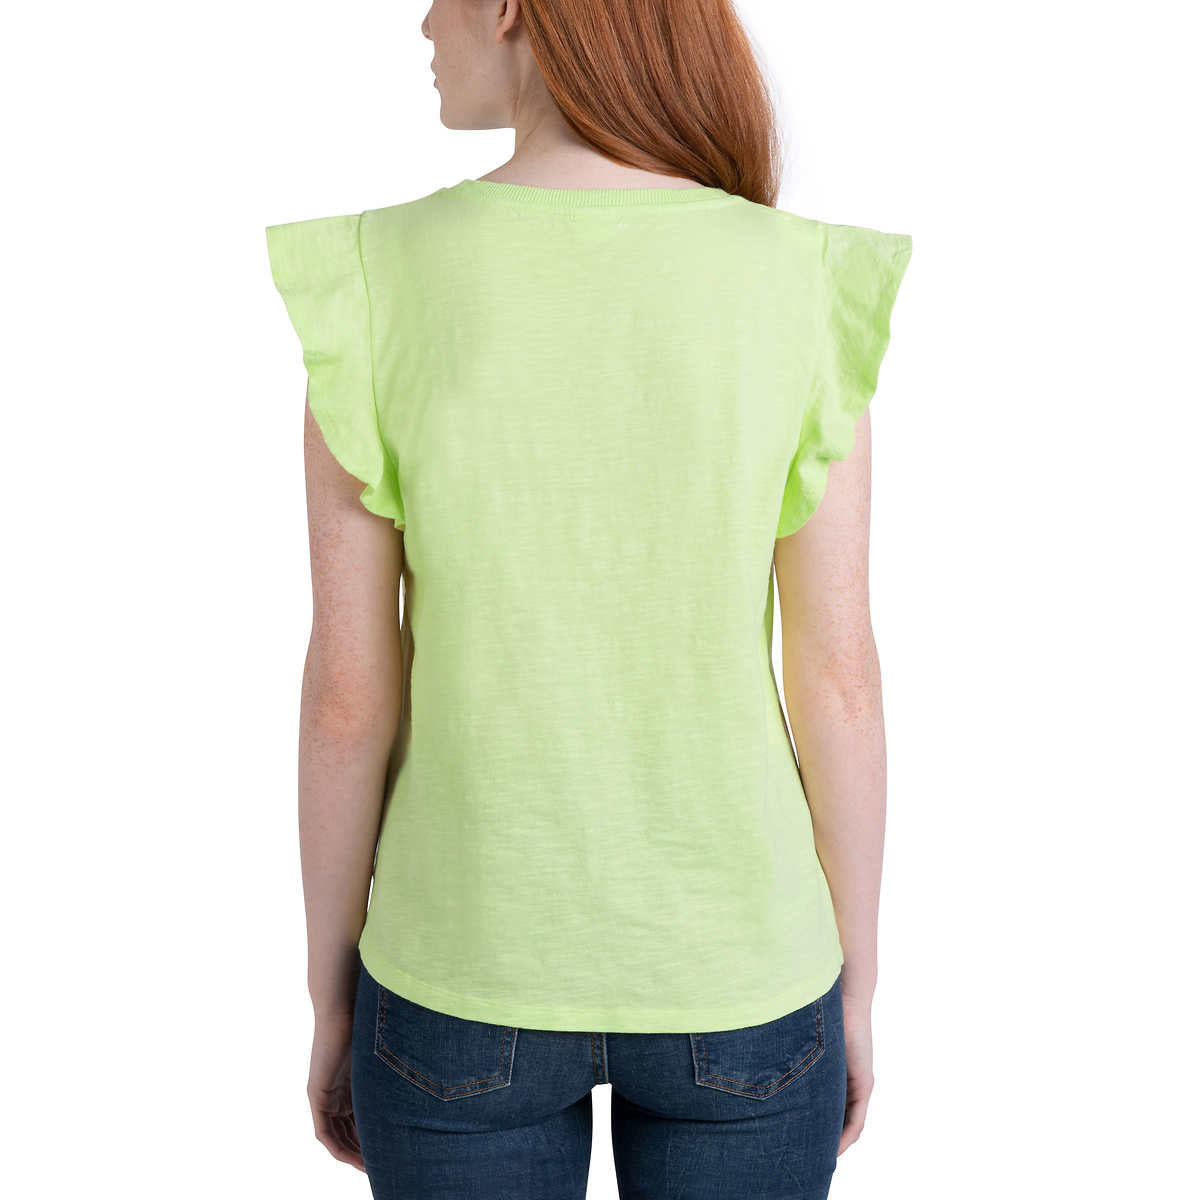 Ecothreads Women's 2-pack Flutter Sleeve T-Shirt Soft Organic Cotton Tee Top